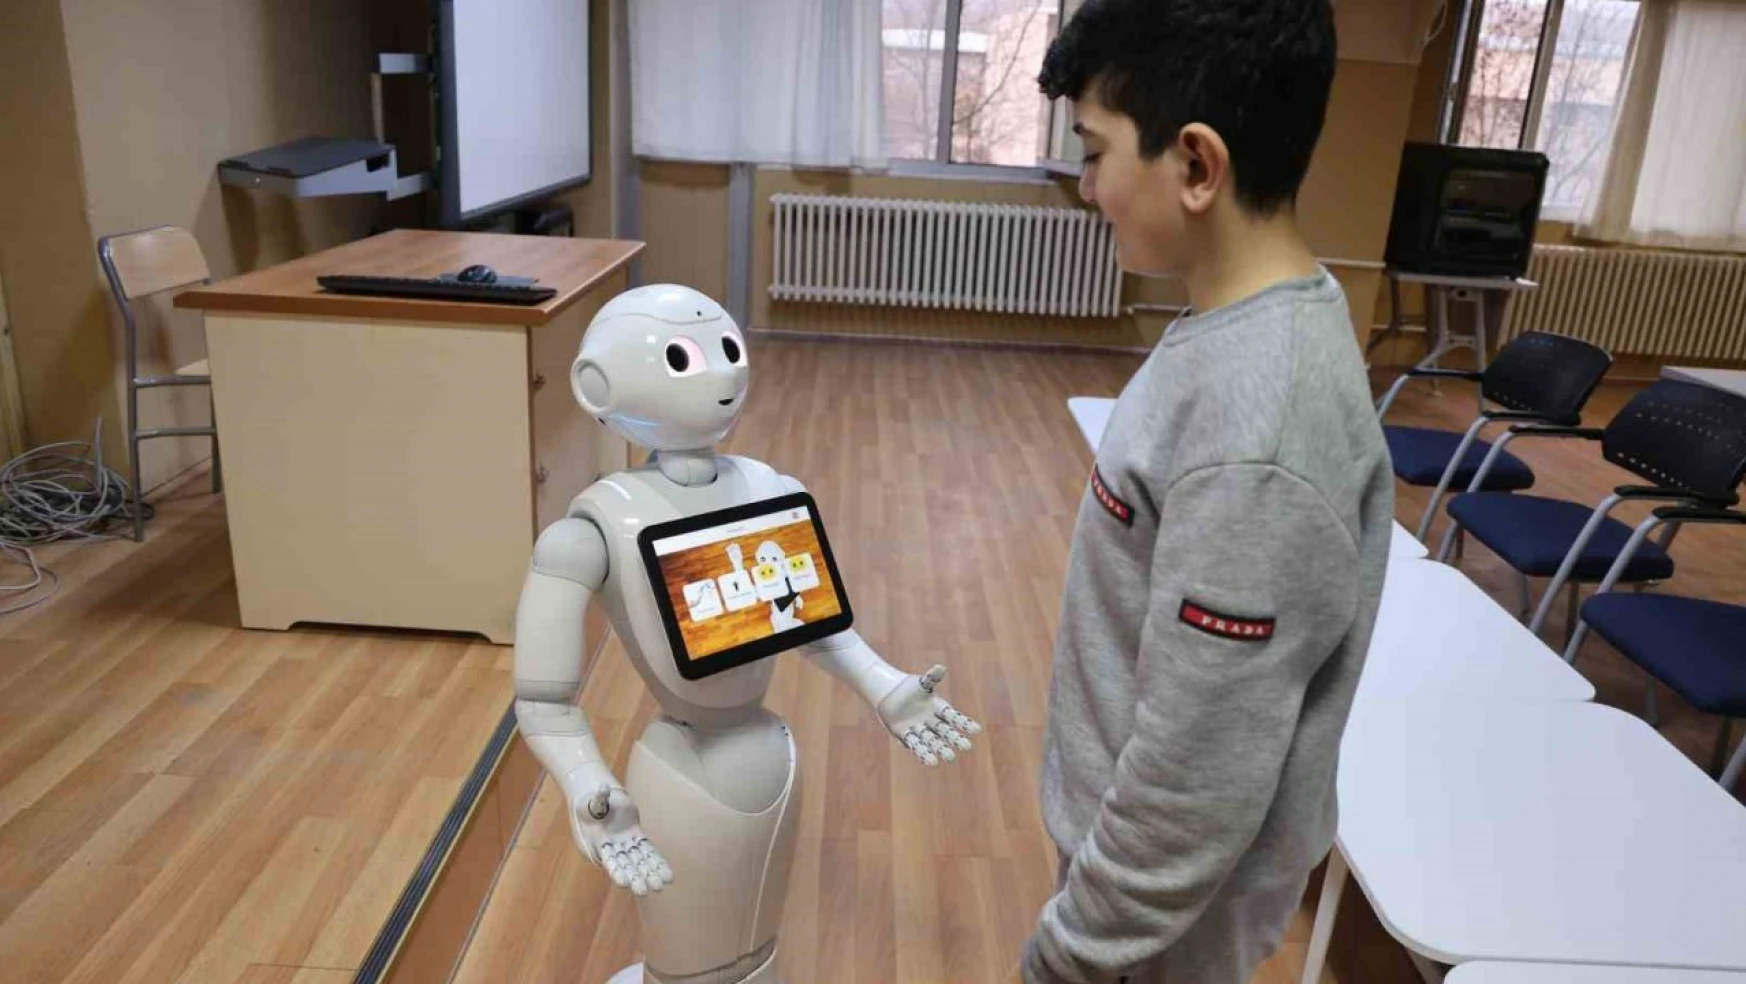 Elazığ'da Otizmli Çocuklar İnsansı Robot Pepper İle Öğrenecek